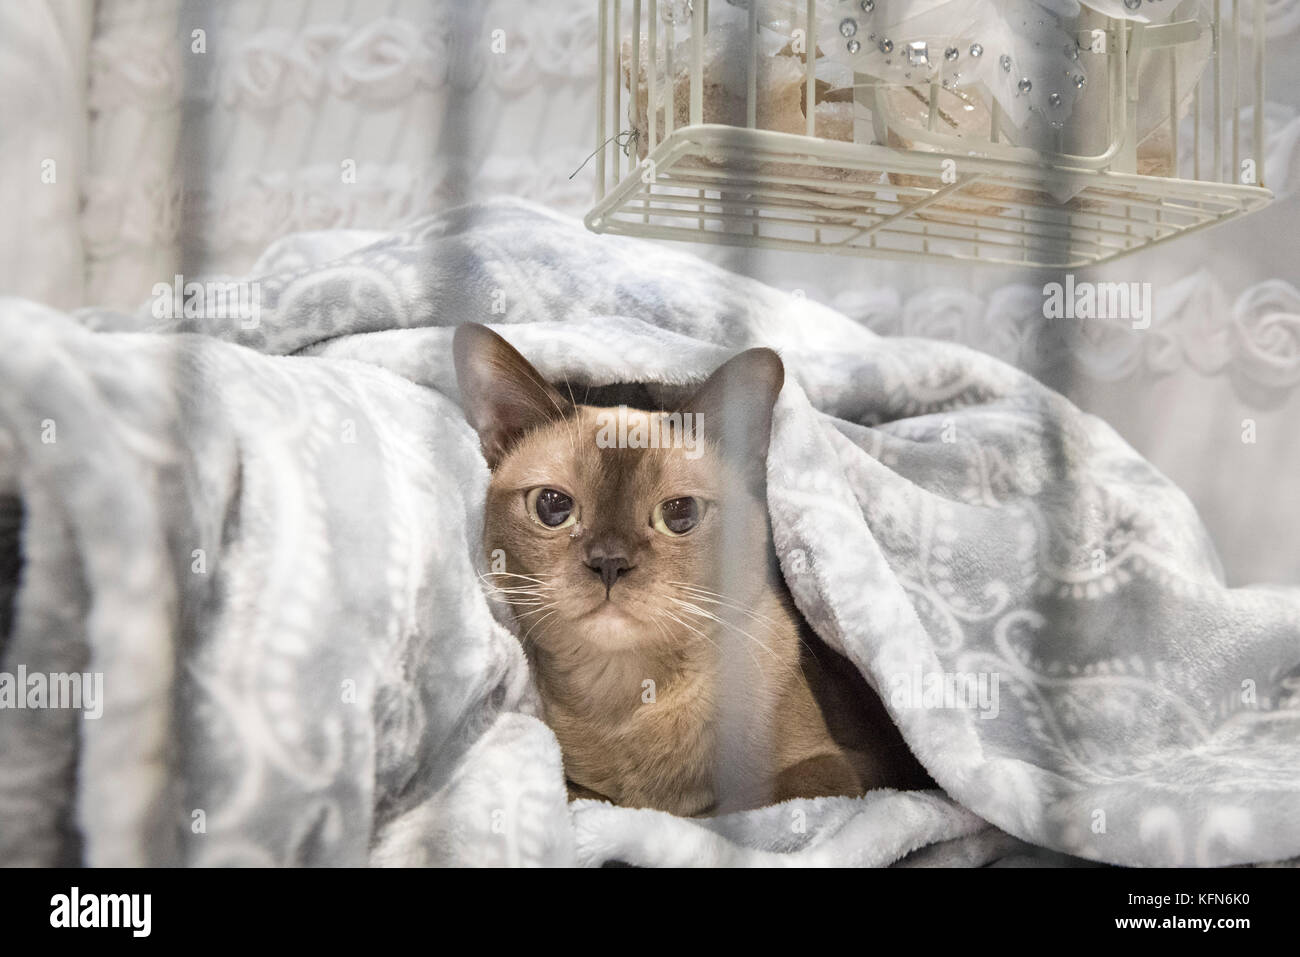 NEC di Birmingham West Midlands, Regno Unito. Il 28 ottobre 2017. Nella foto: Caged lusso: un gatto birmano guarda fuori della sua gabbia in attesa di essere giudicati. / Hund Foto Stock